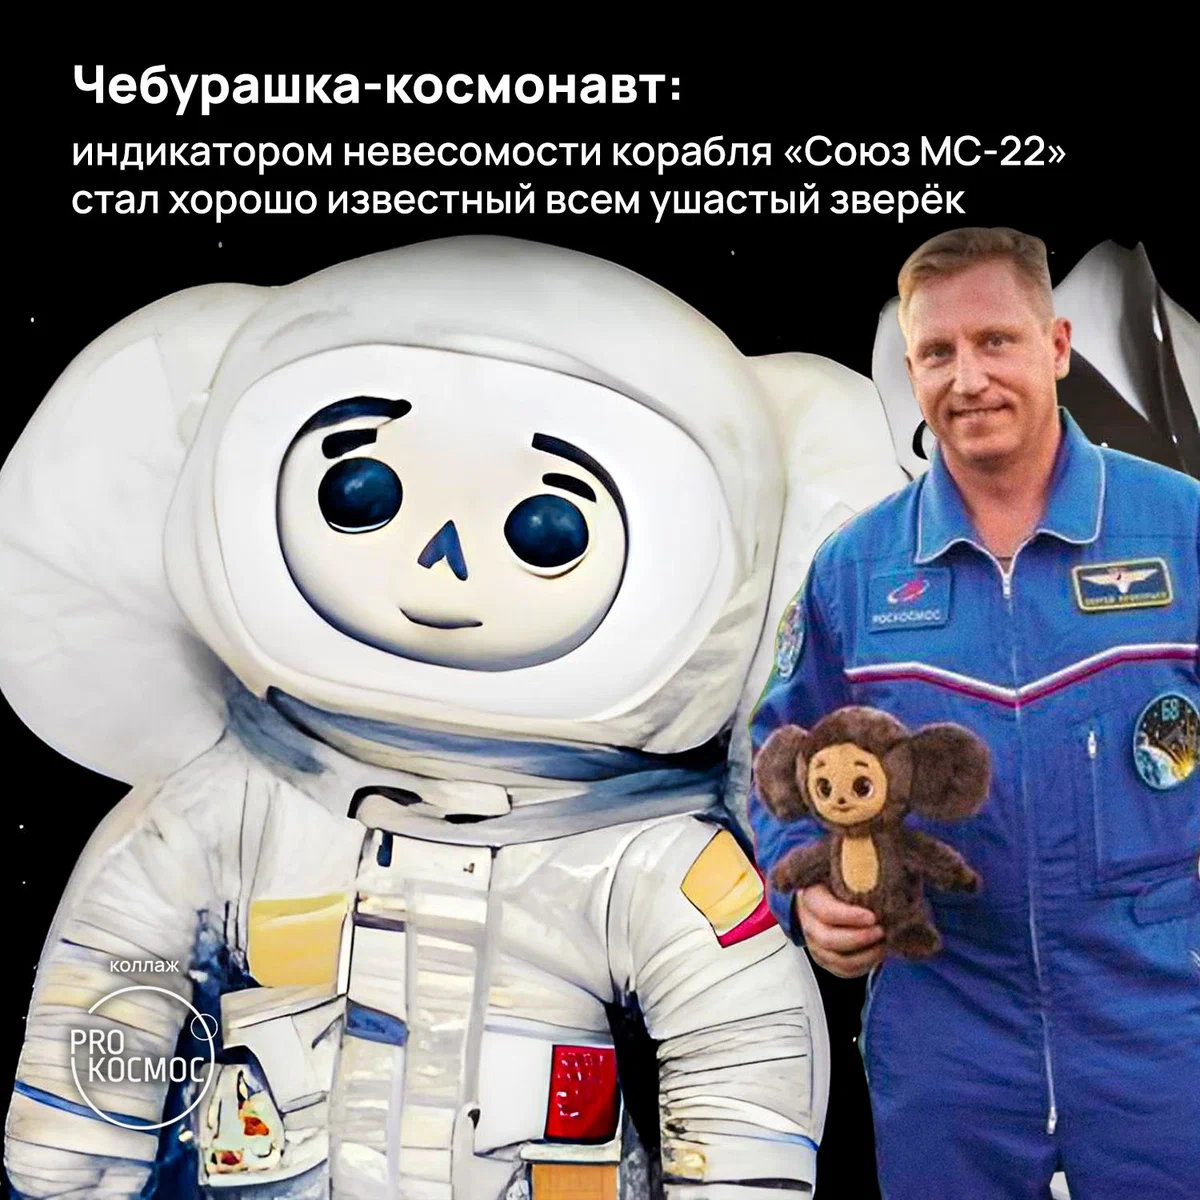 Чебурашка-космонавт: индикатором невесомости корабля «Союз МС-22» стал хорошо известный всем ушастый зверёк⁠⁠ height=1200px width=1200px